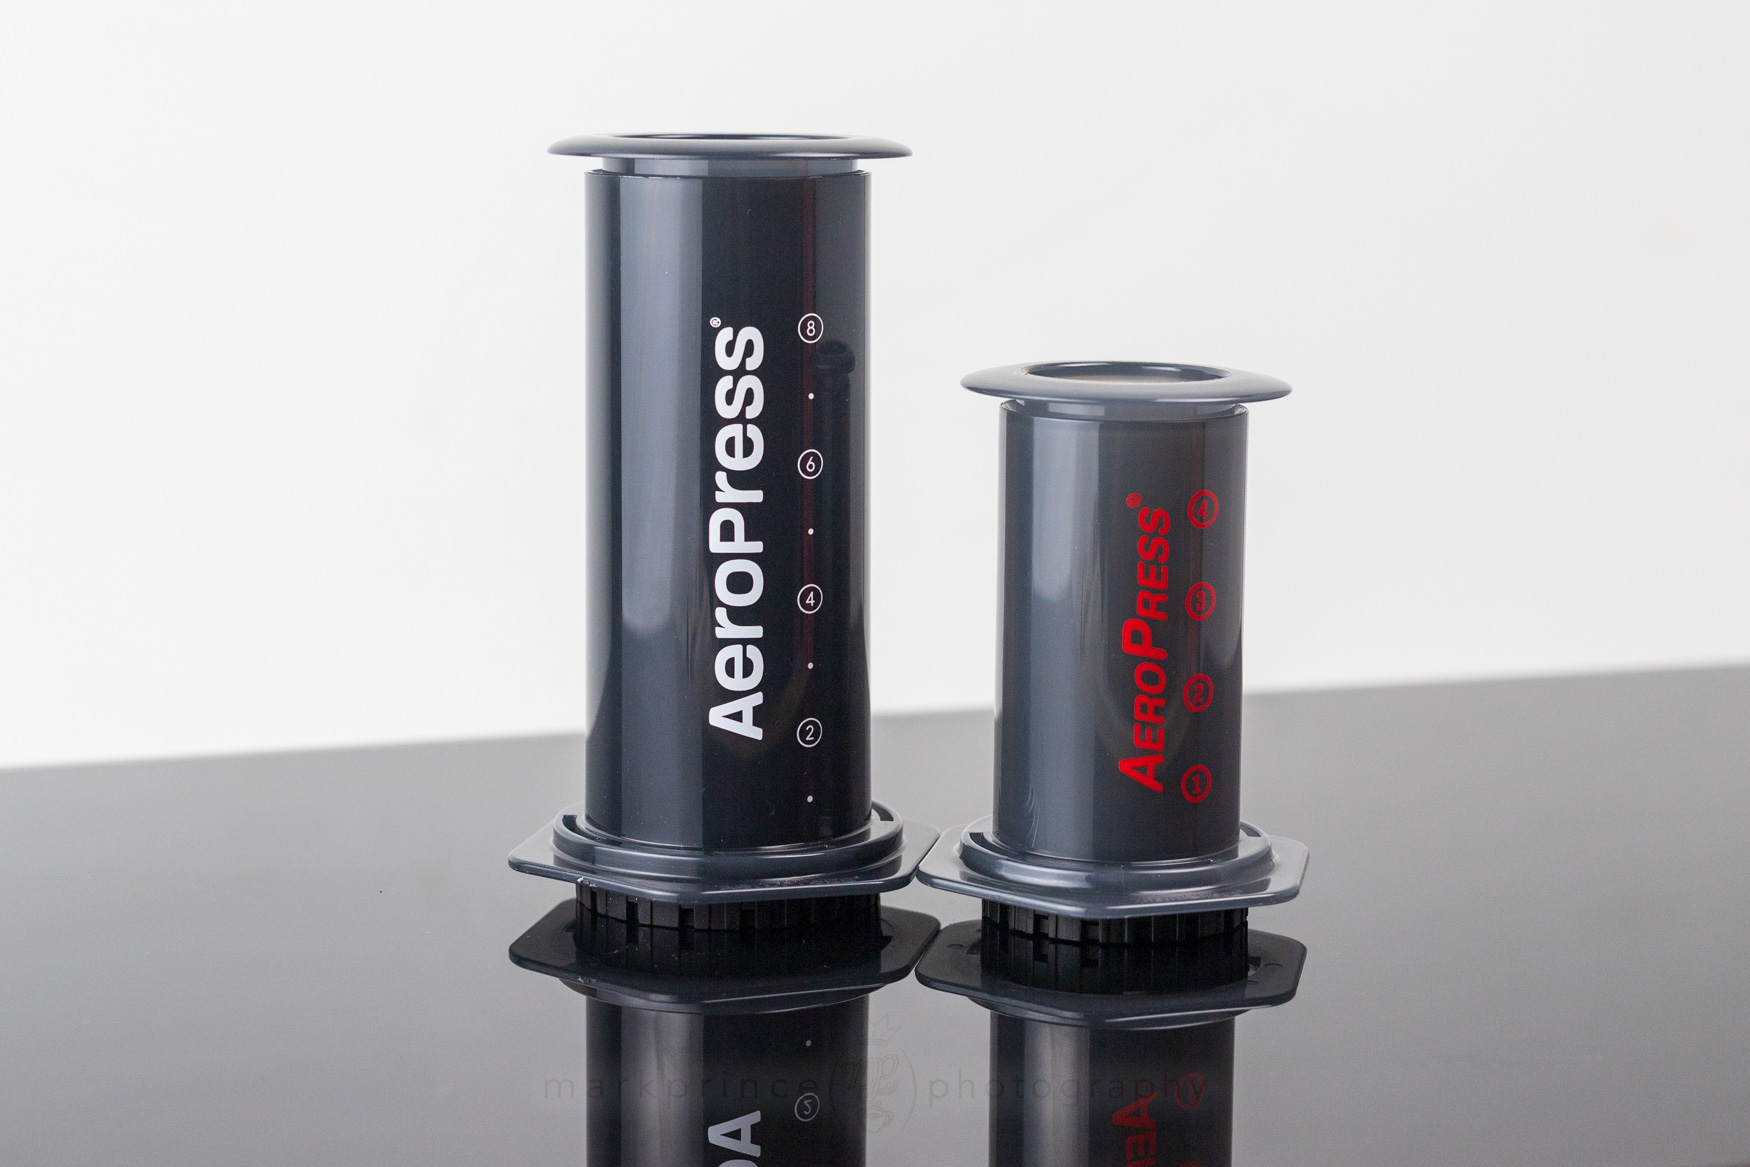 AeroPress XL vs AeroPress vs AeroPress Go and Brewing With AeroPress XL 